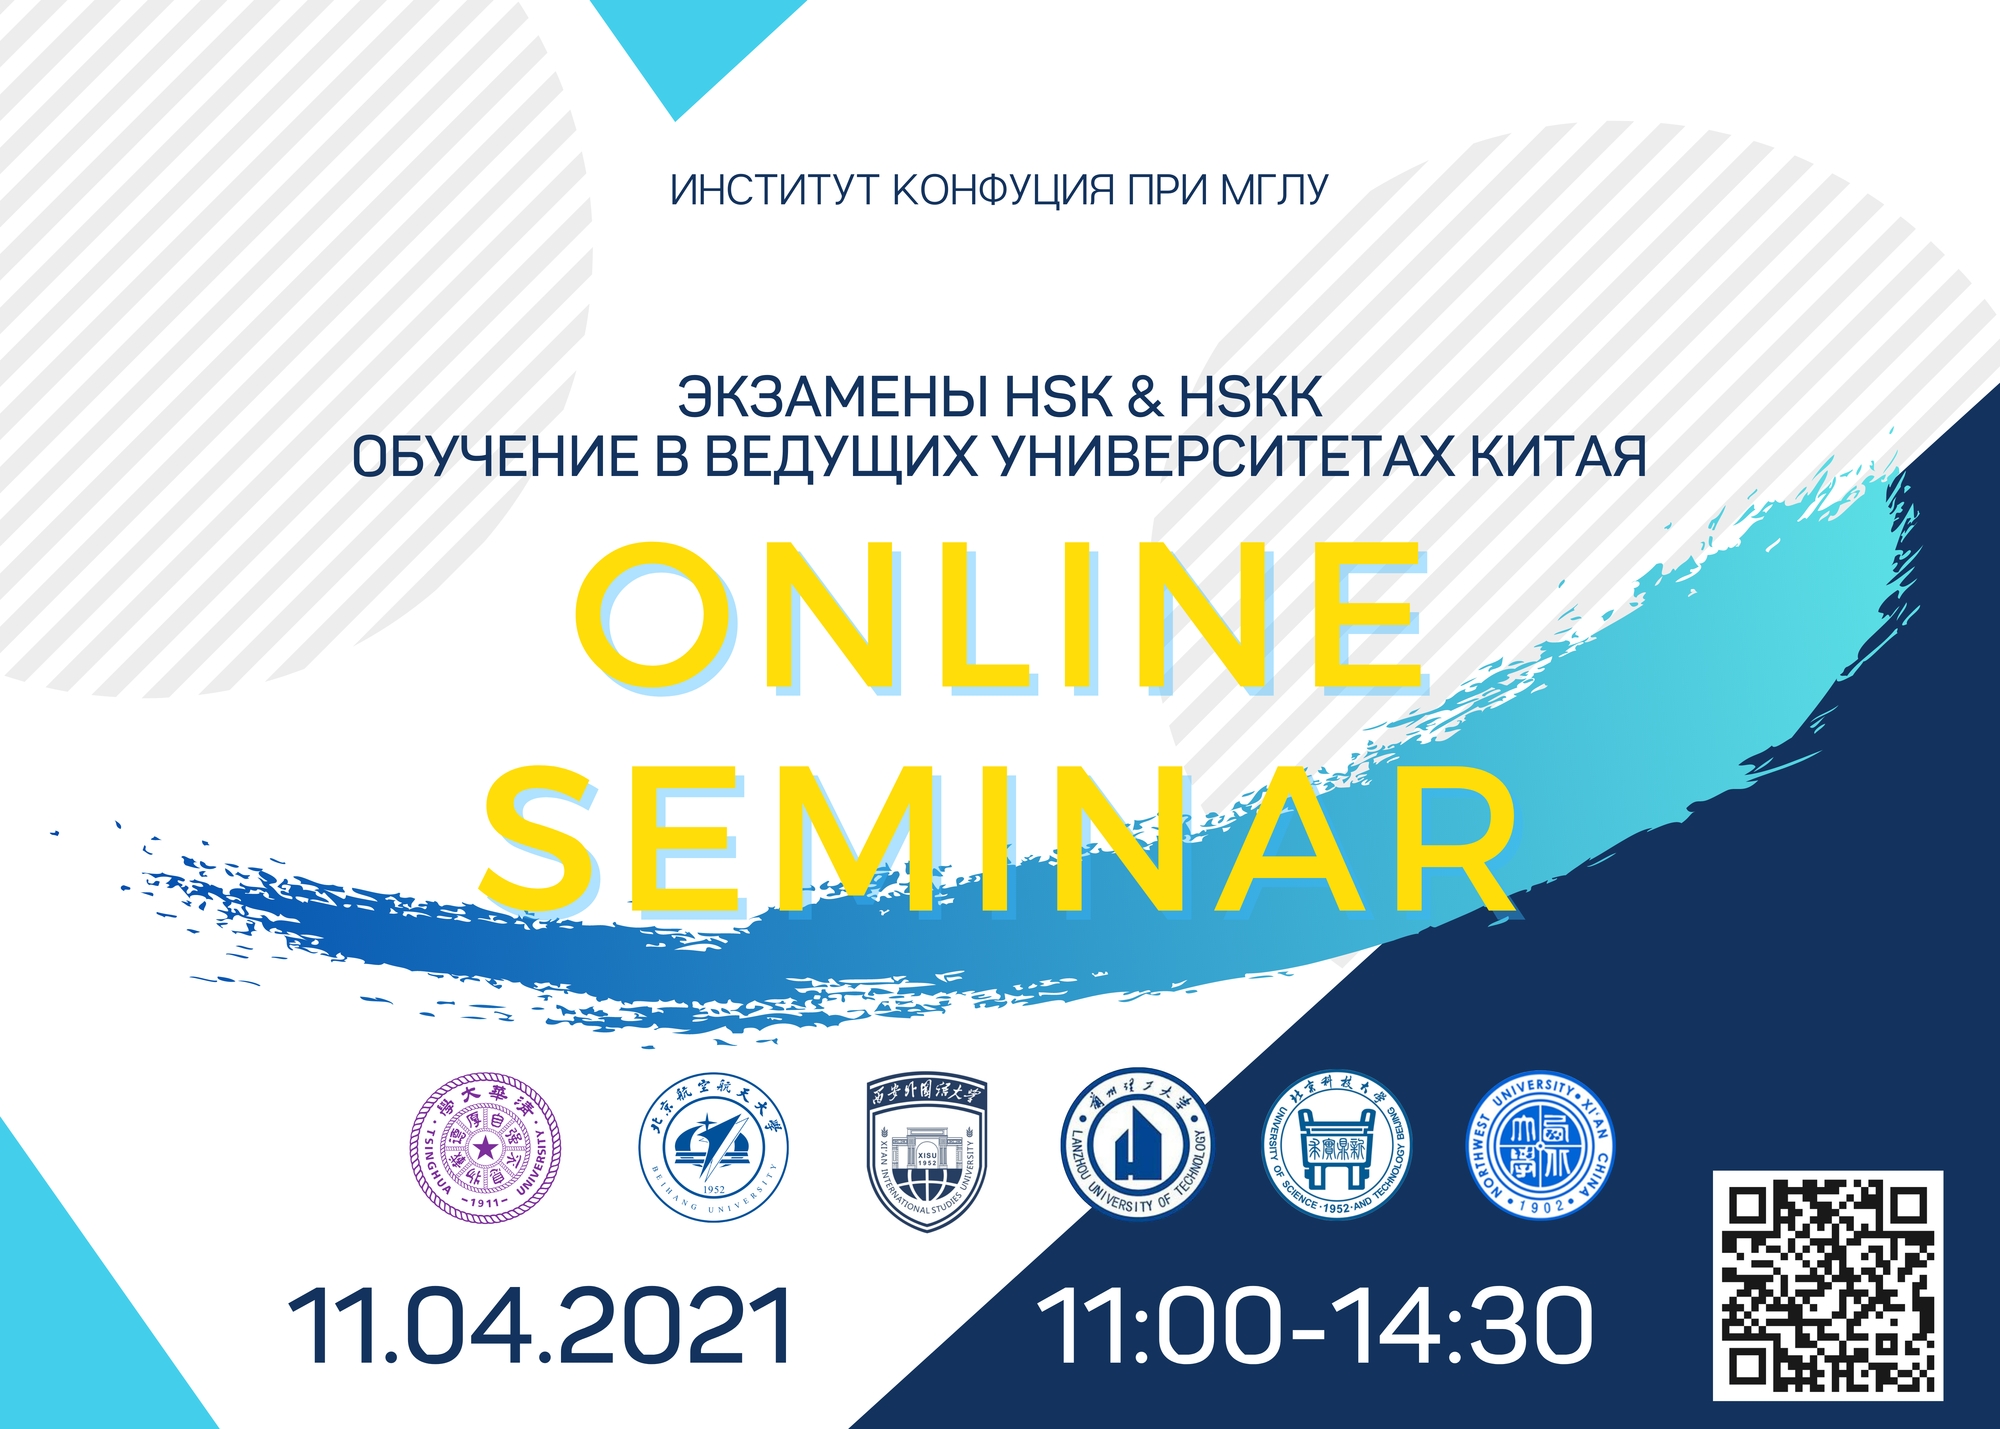 Online-семинар: экзамены HSK и HSKK, обучение в Китае. 11.04.2021 11:00-14:30 (мск)